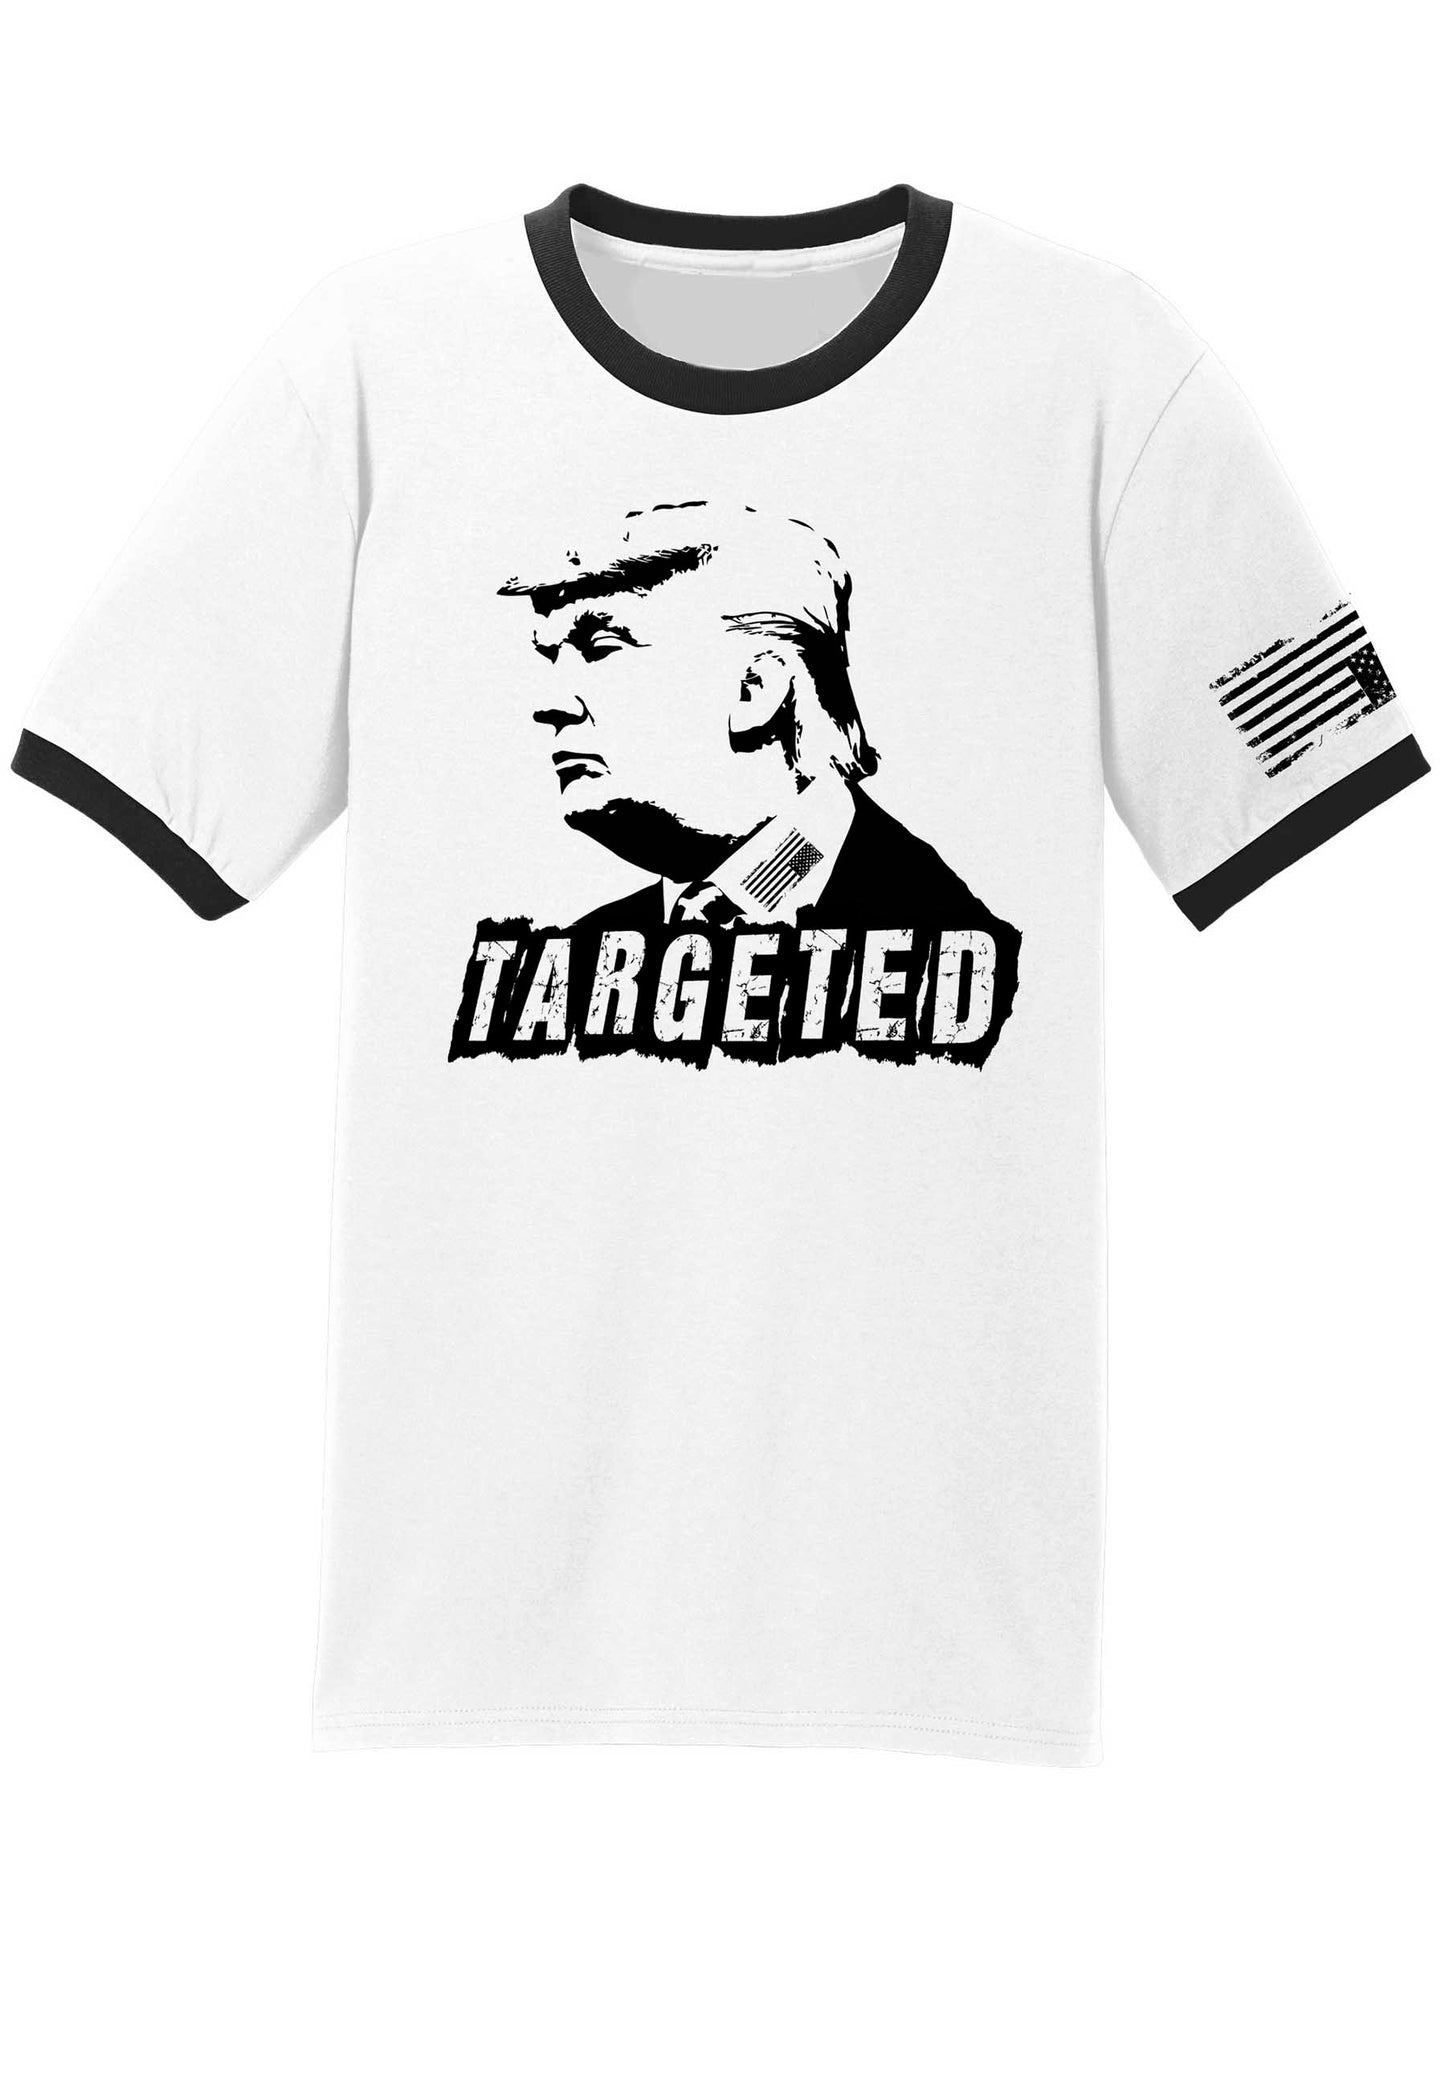 Donald Trump targeted shirt